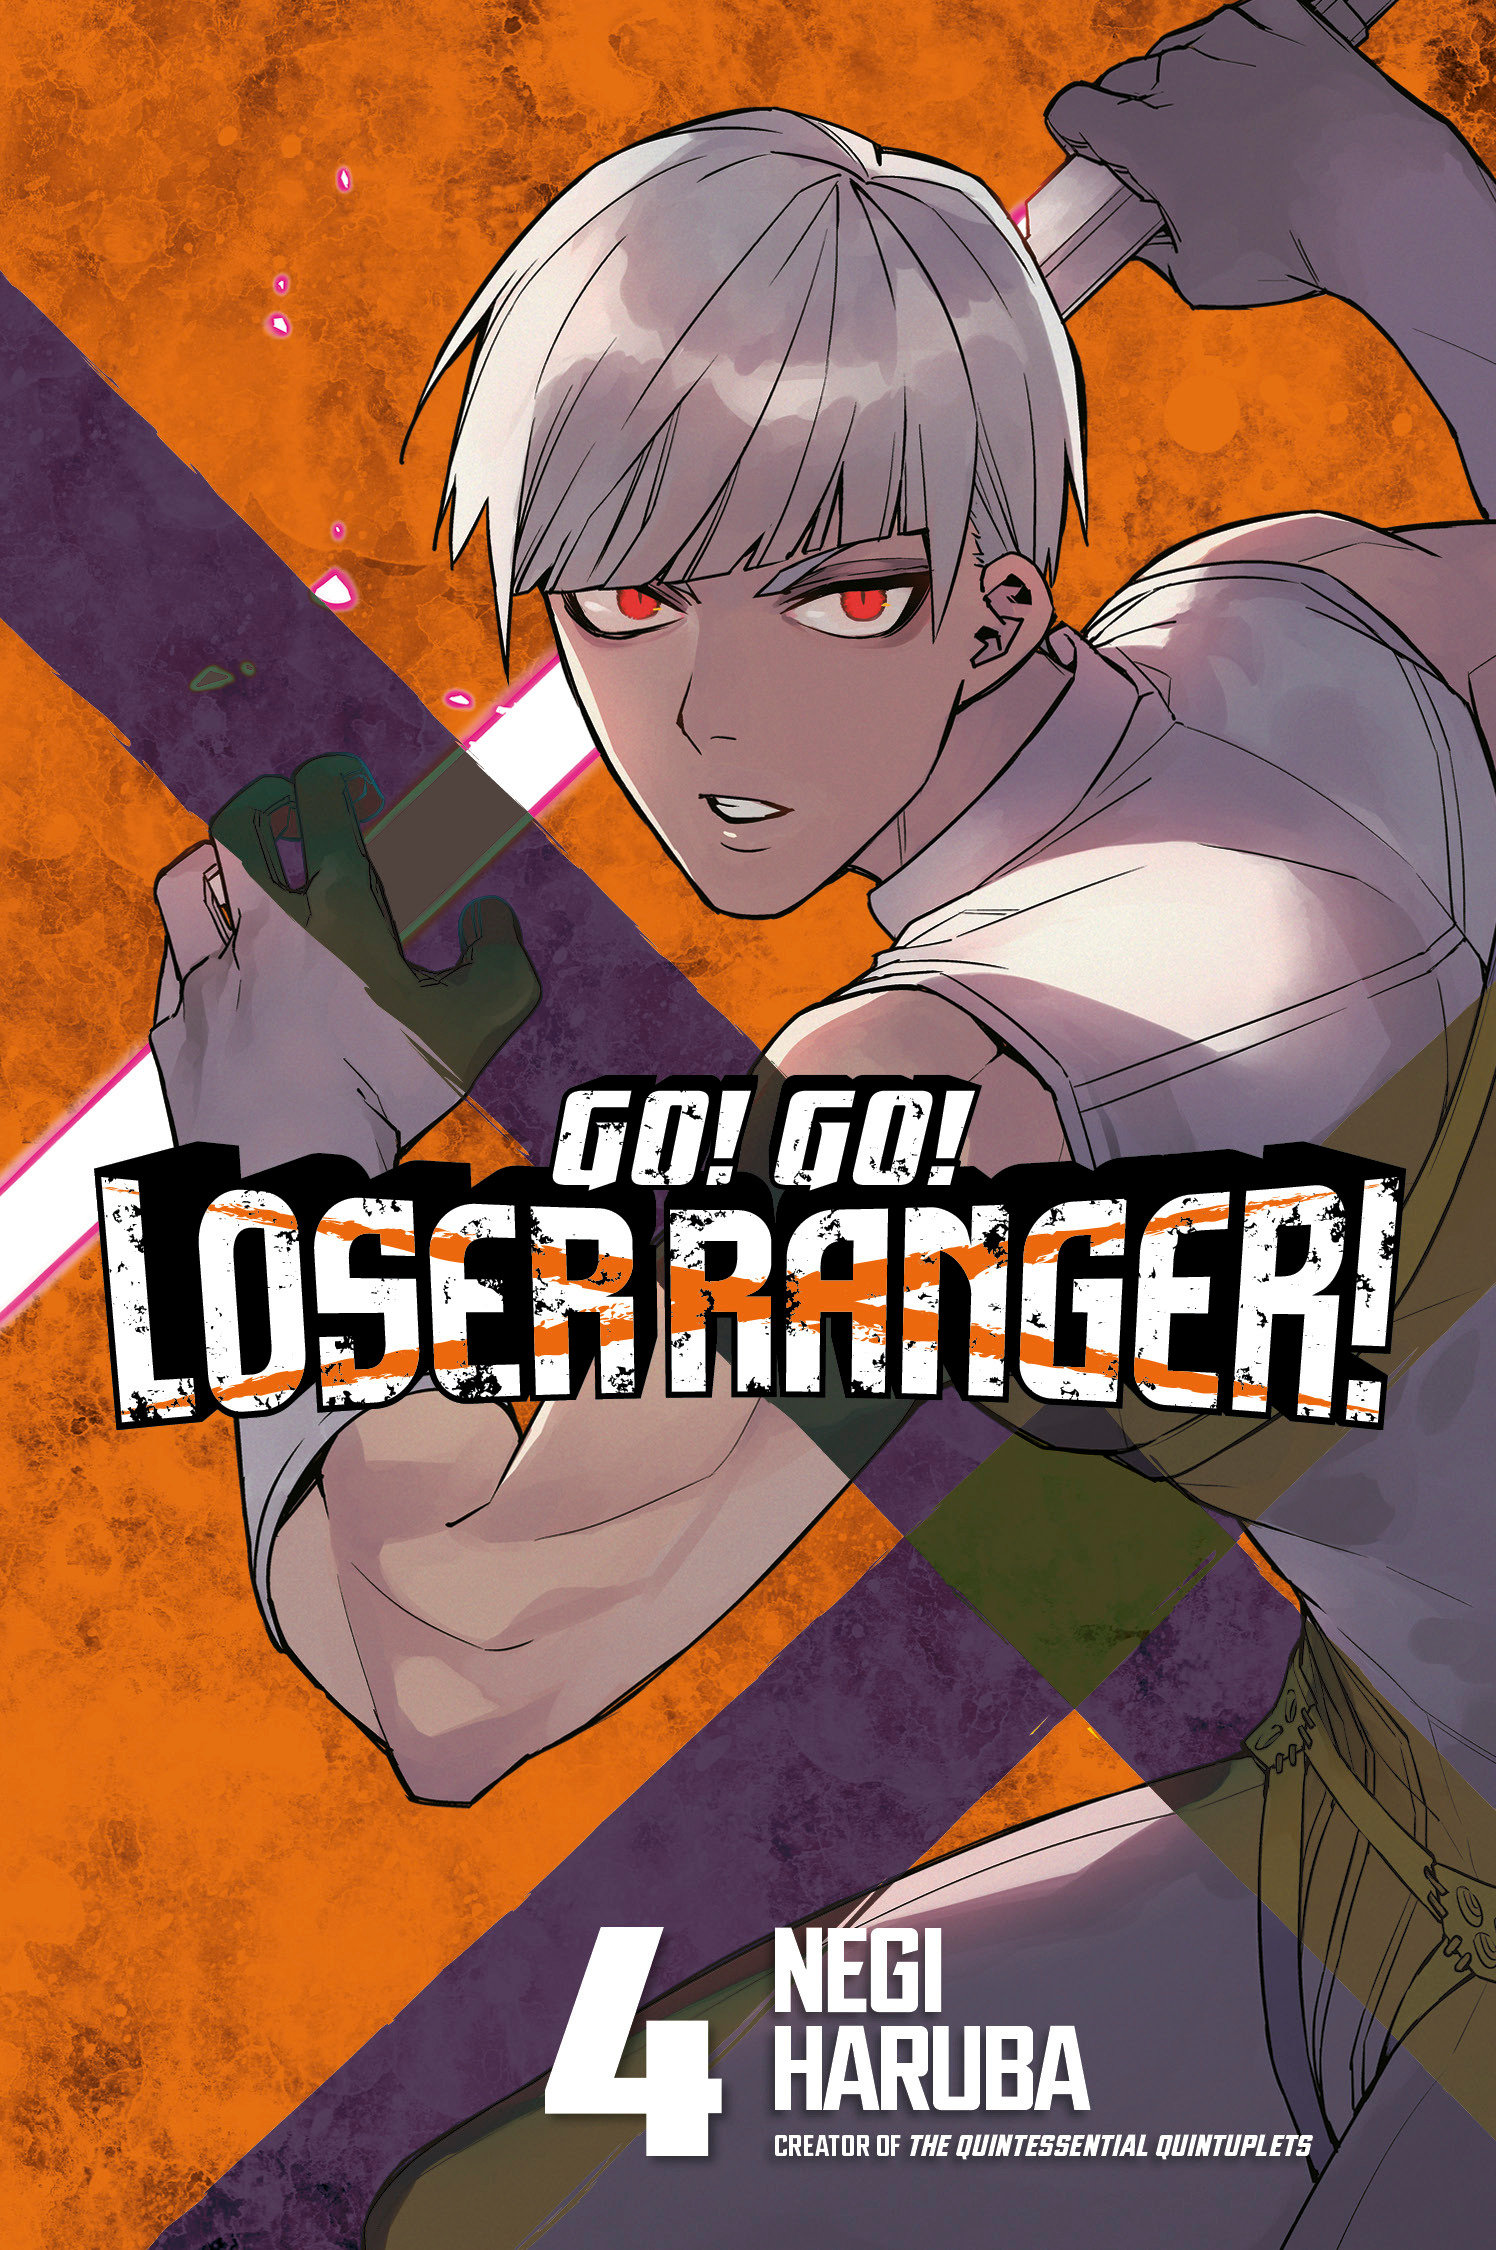 Go! Go! Loser Ranger! Manga Volume 1